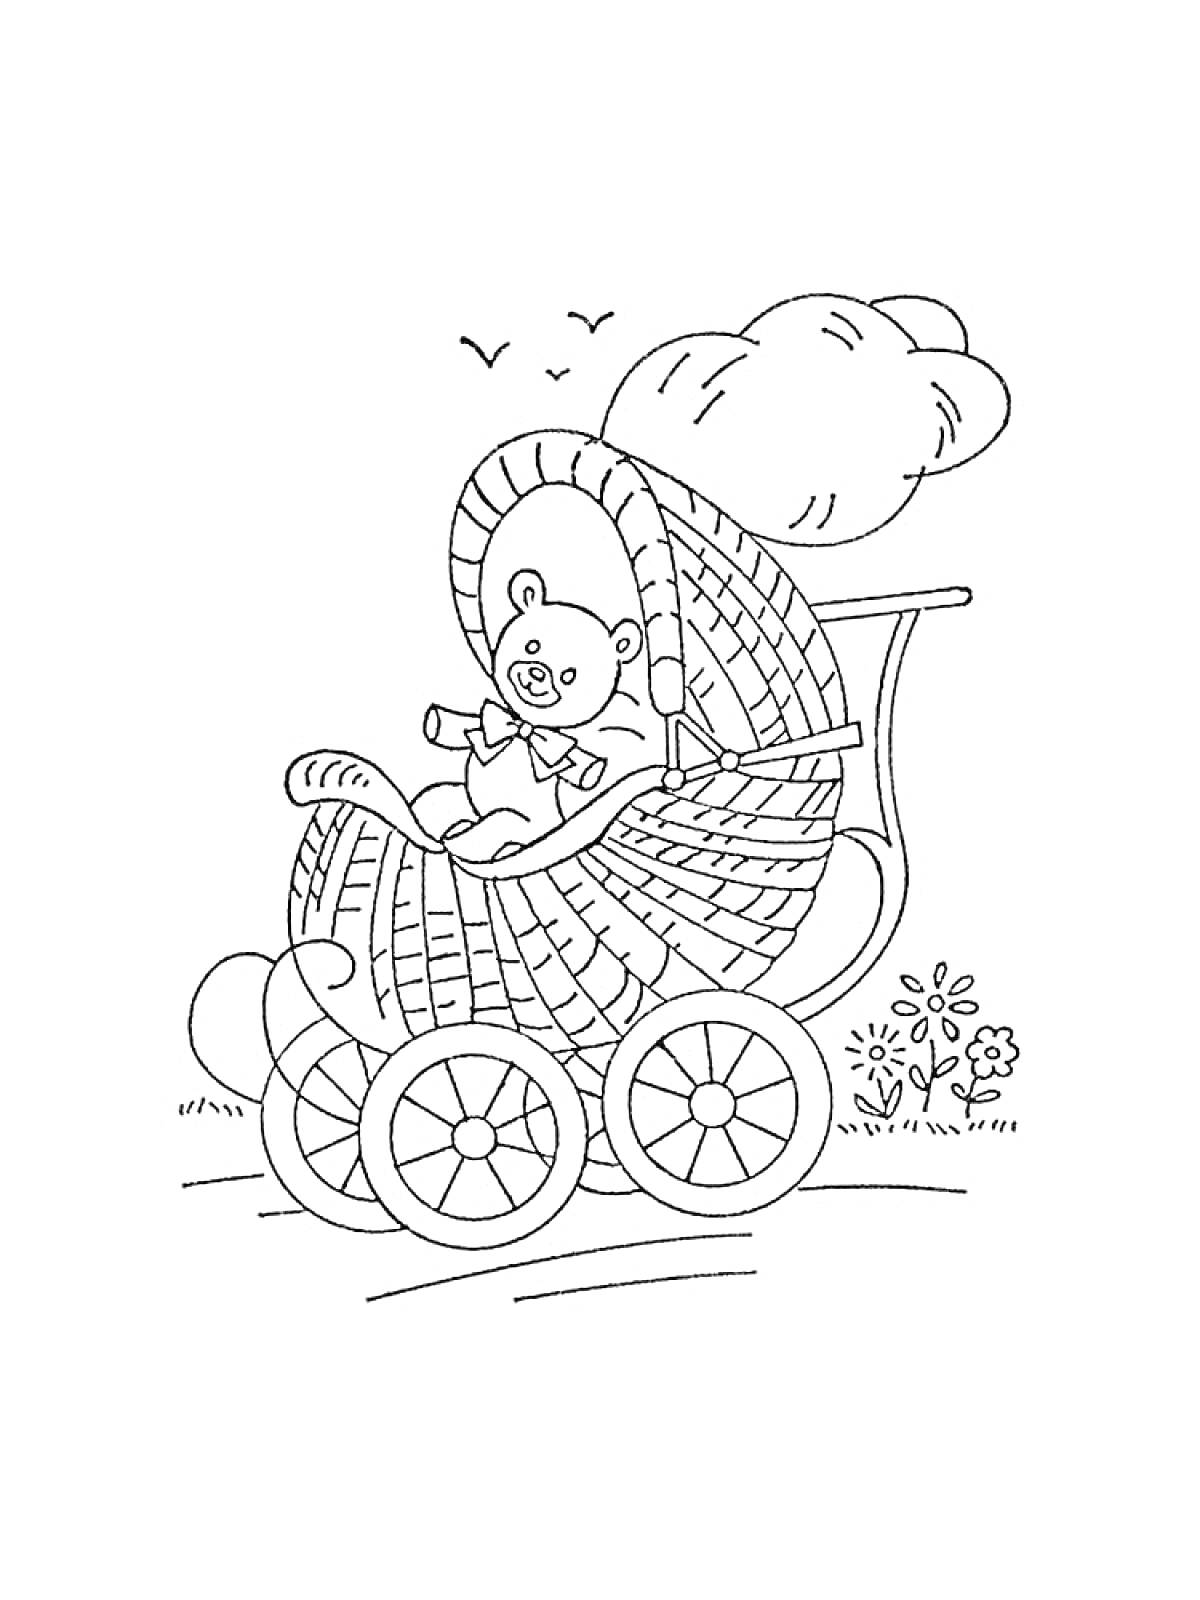 Раскраска Мишка в коляске с капюшоном на прогулке, цветы, трава и птицы на заднем плане